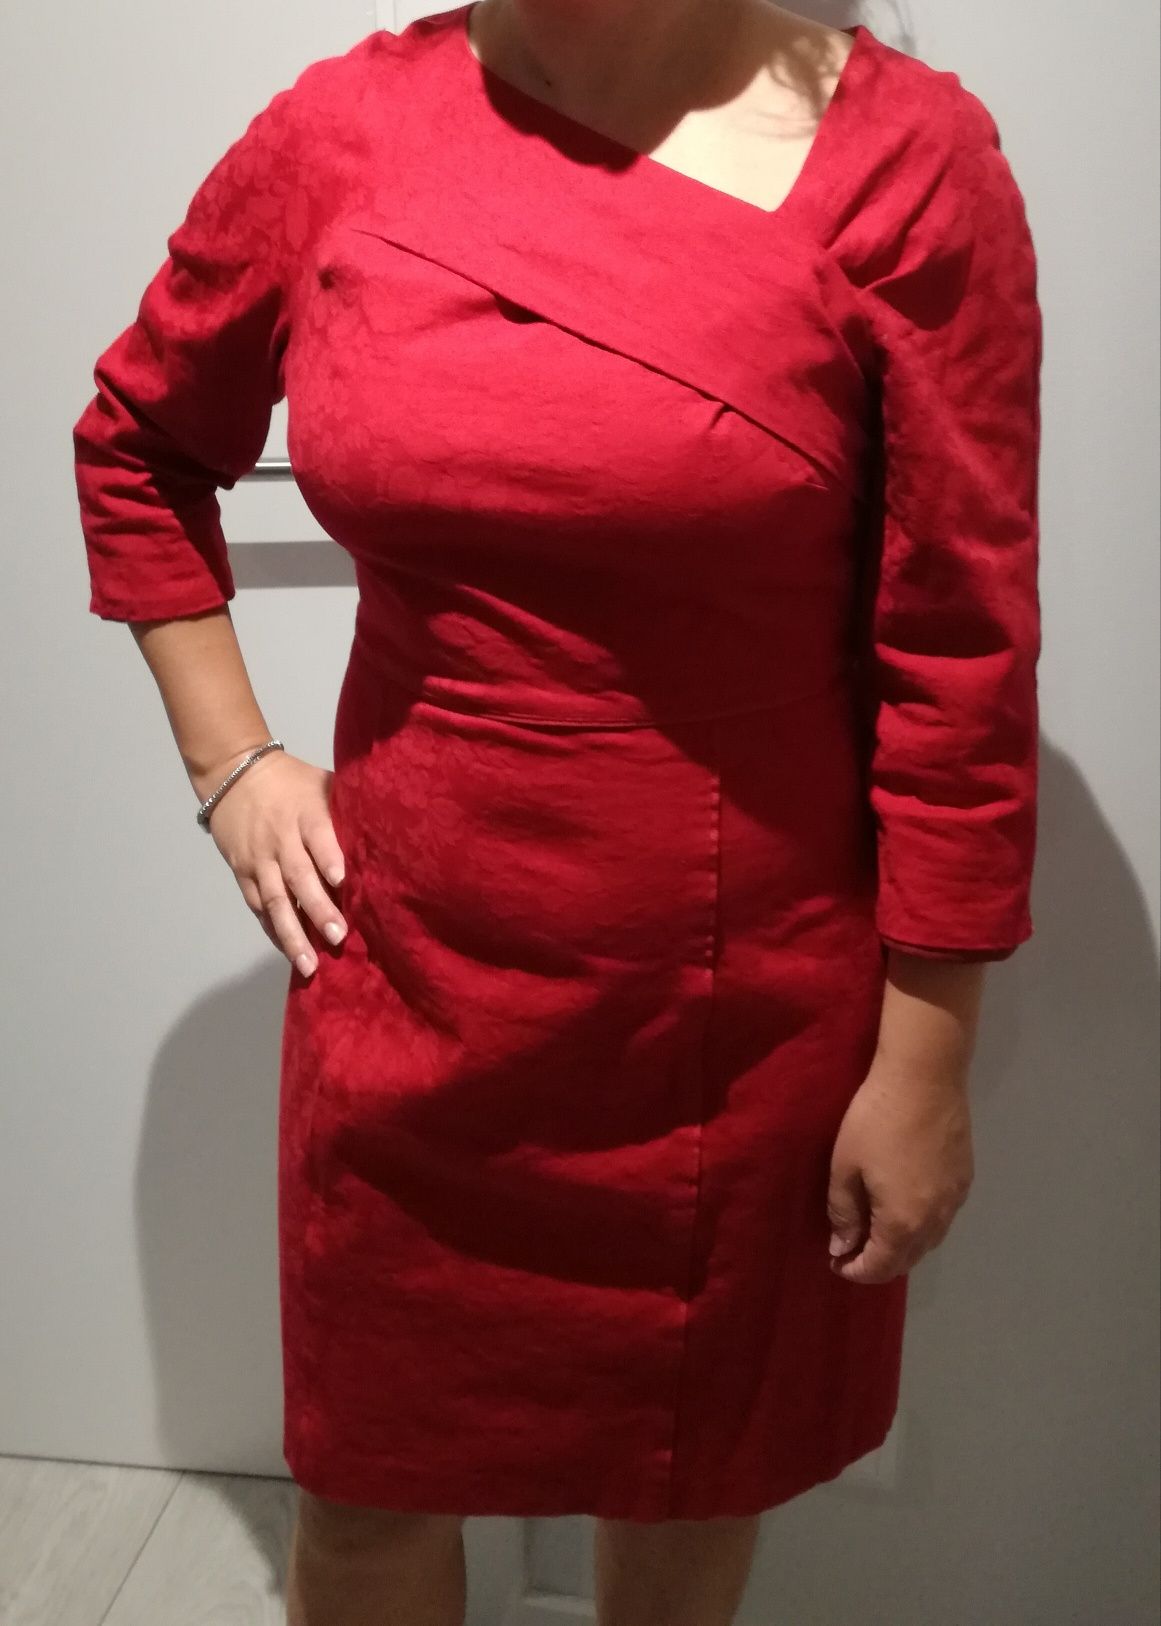 Vestido vermelho tamanho M - marca Tintoretto